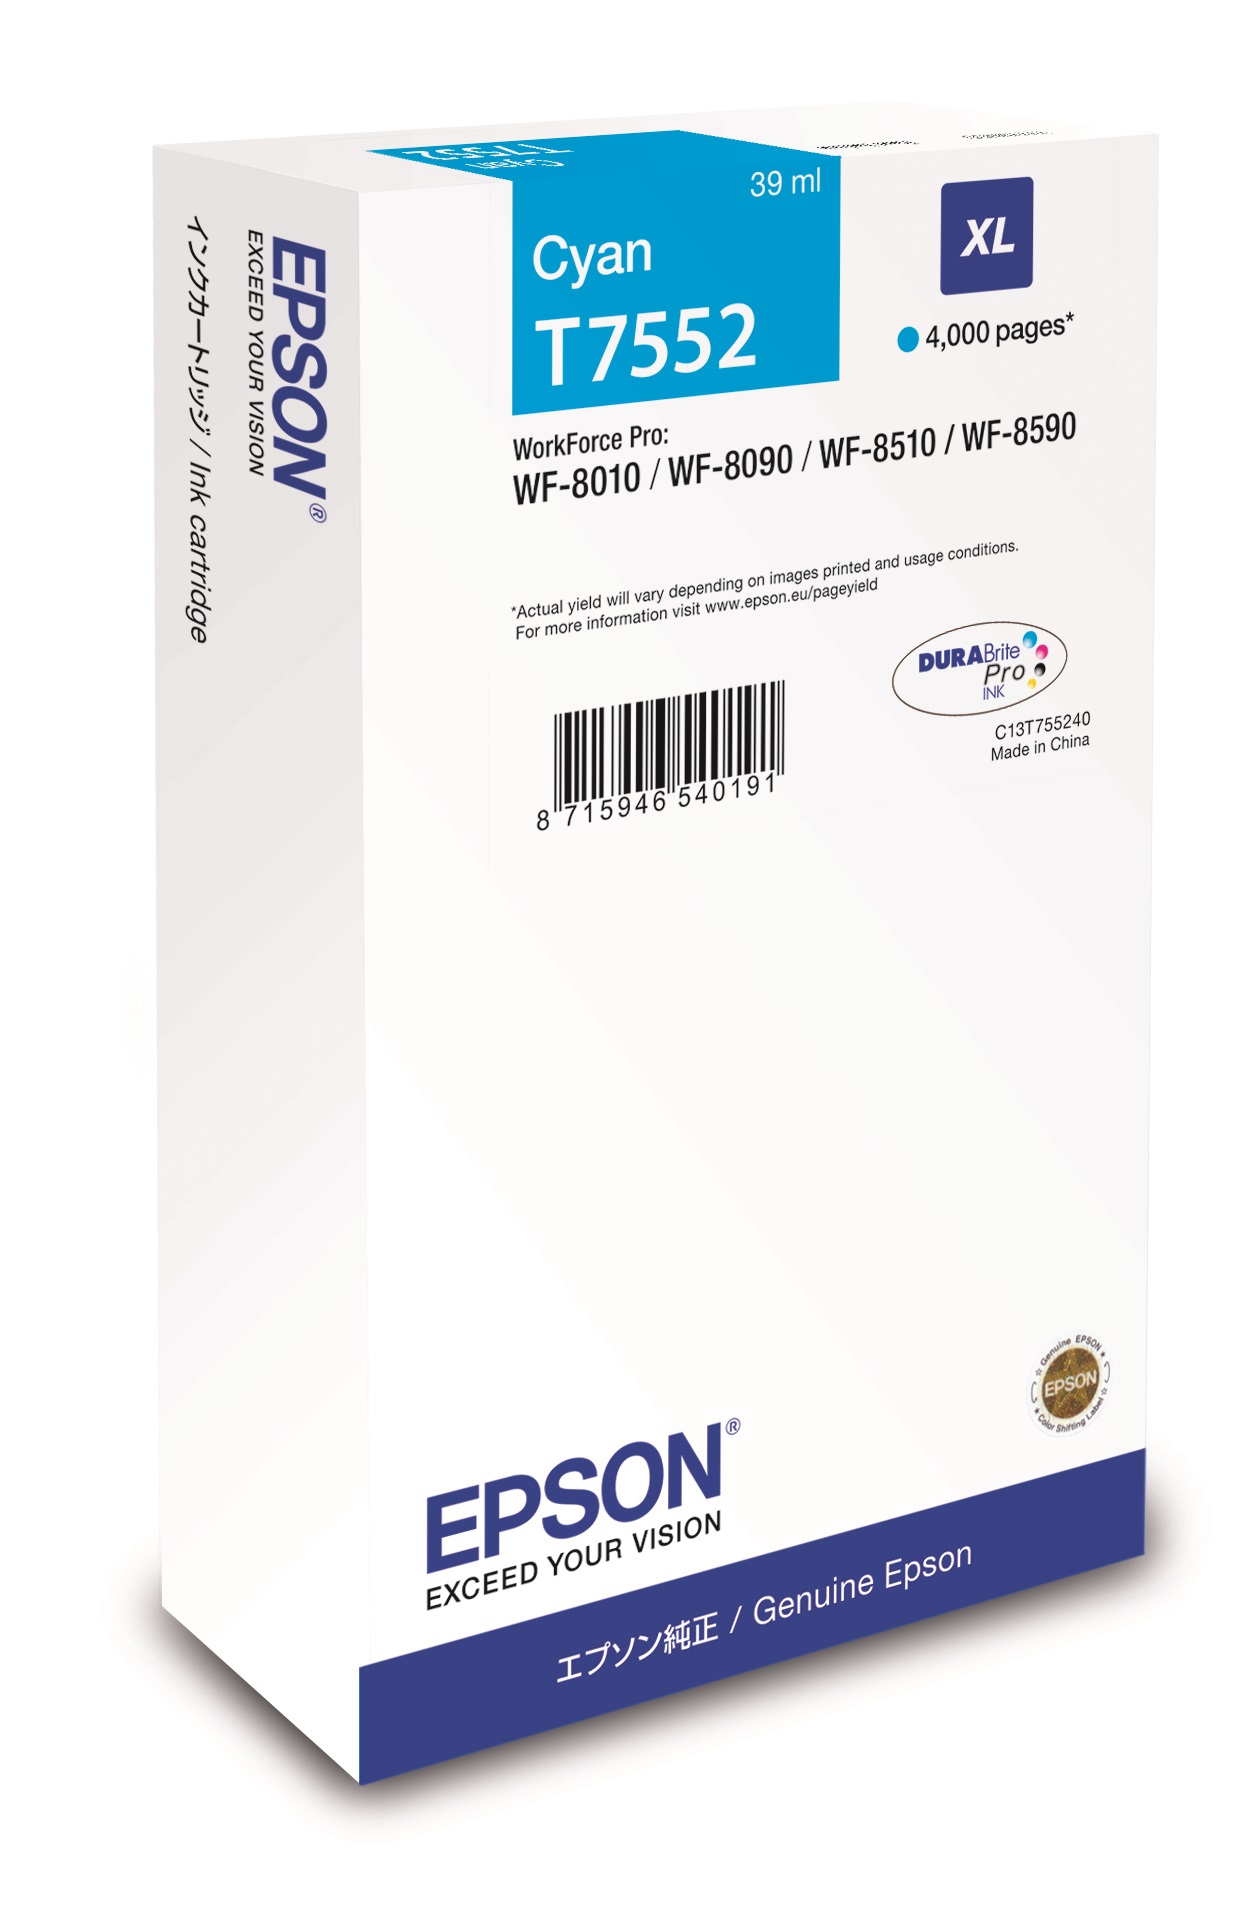 Epson Cartridge Cyan XL C13T755240